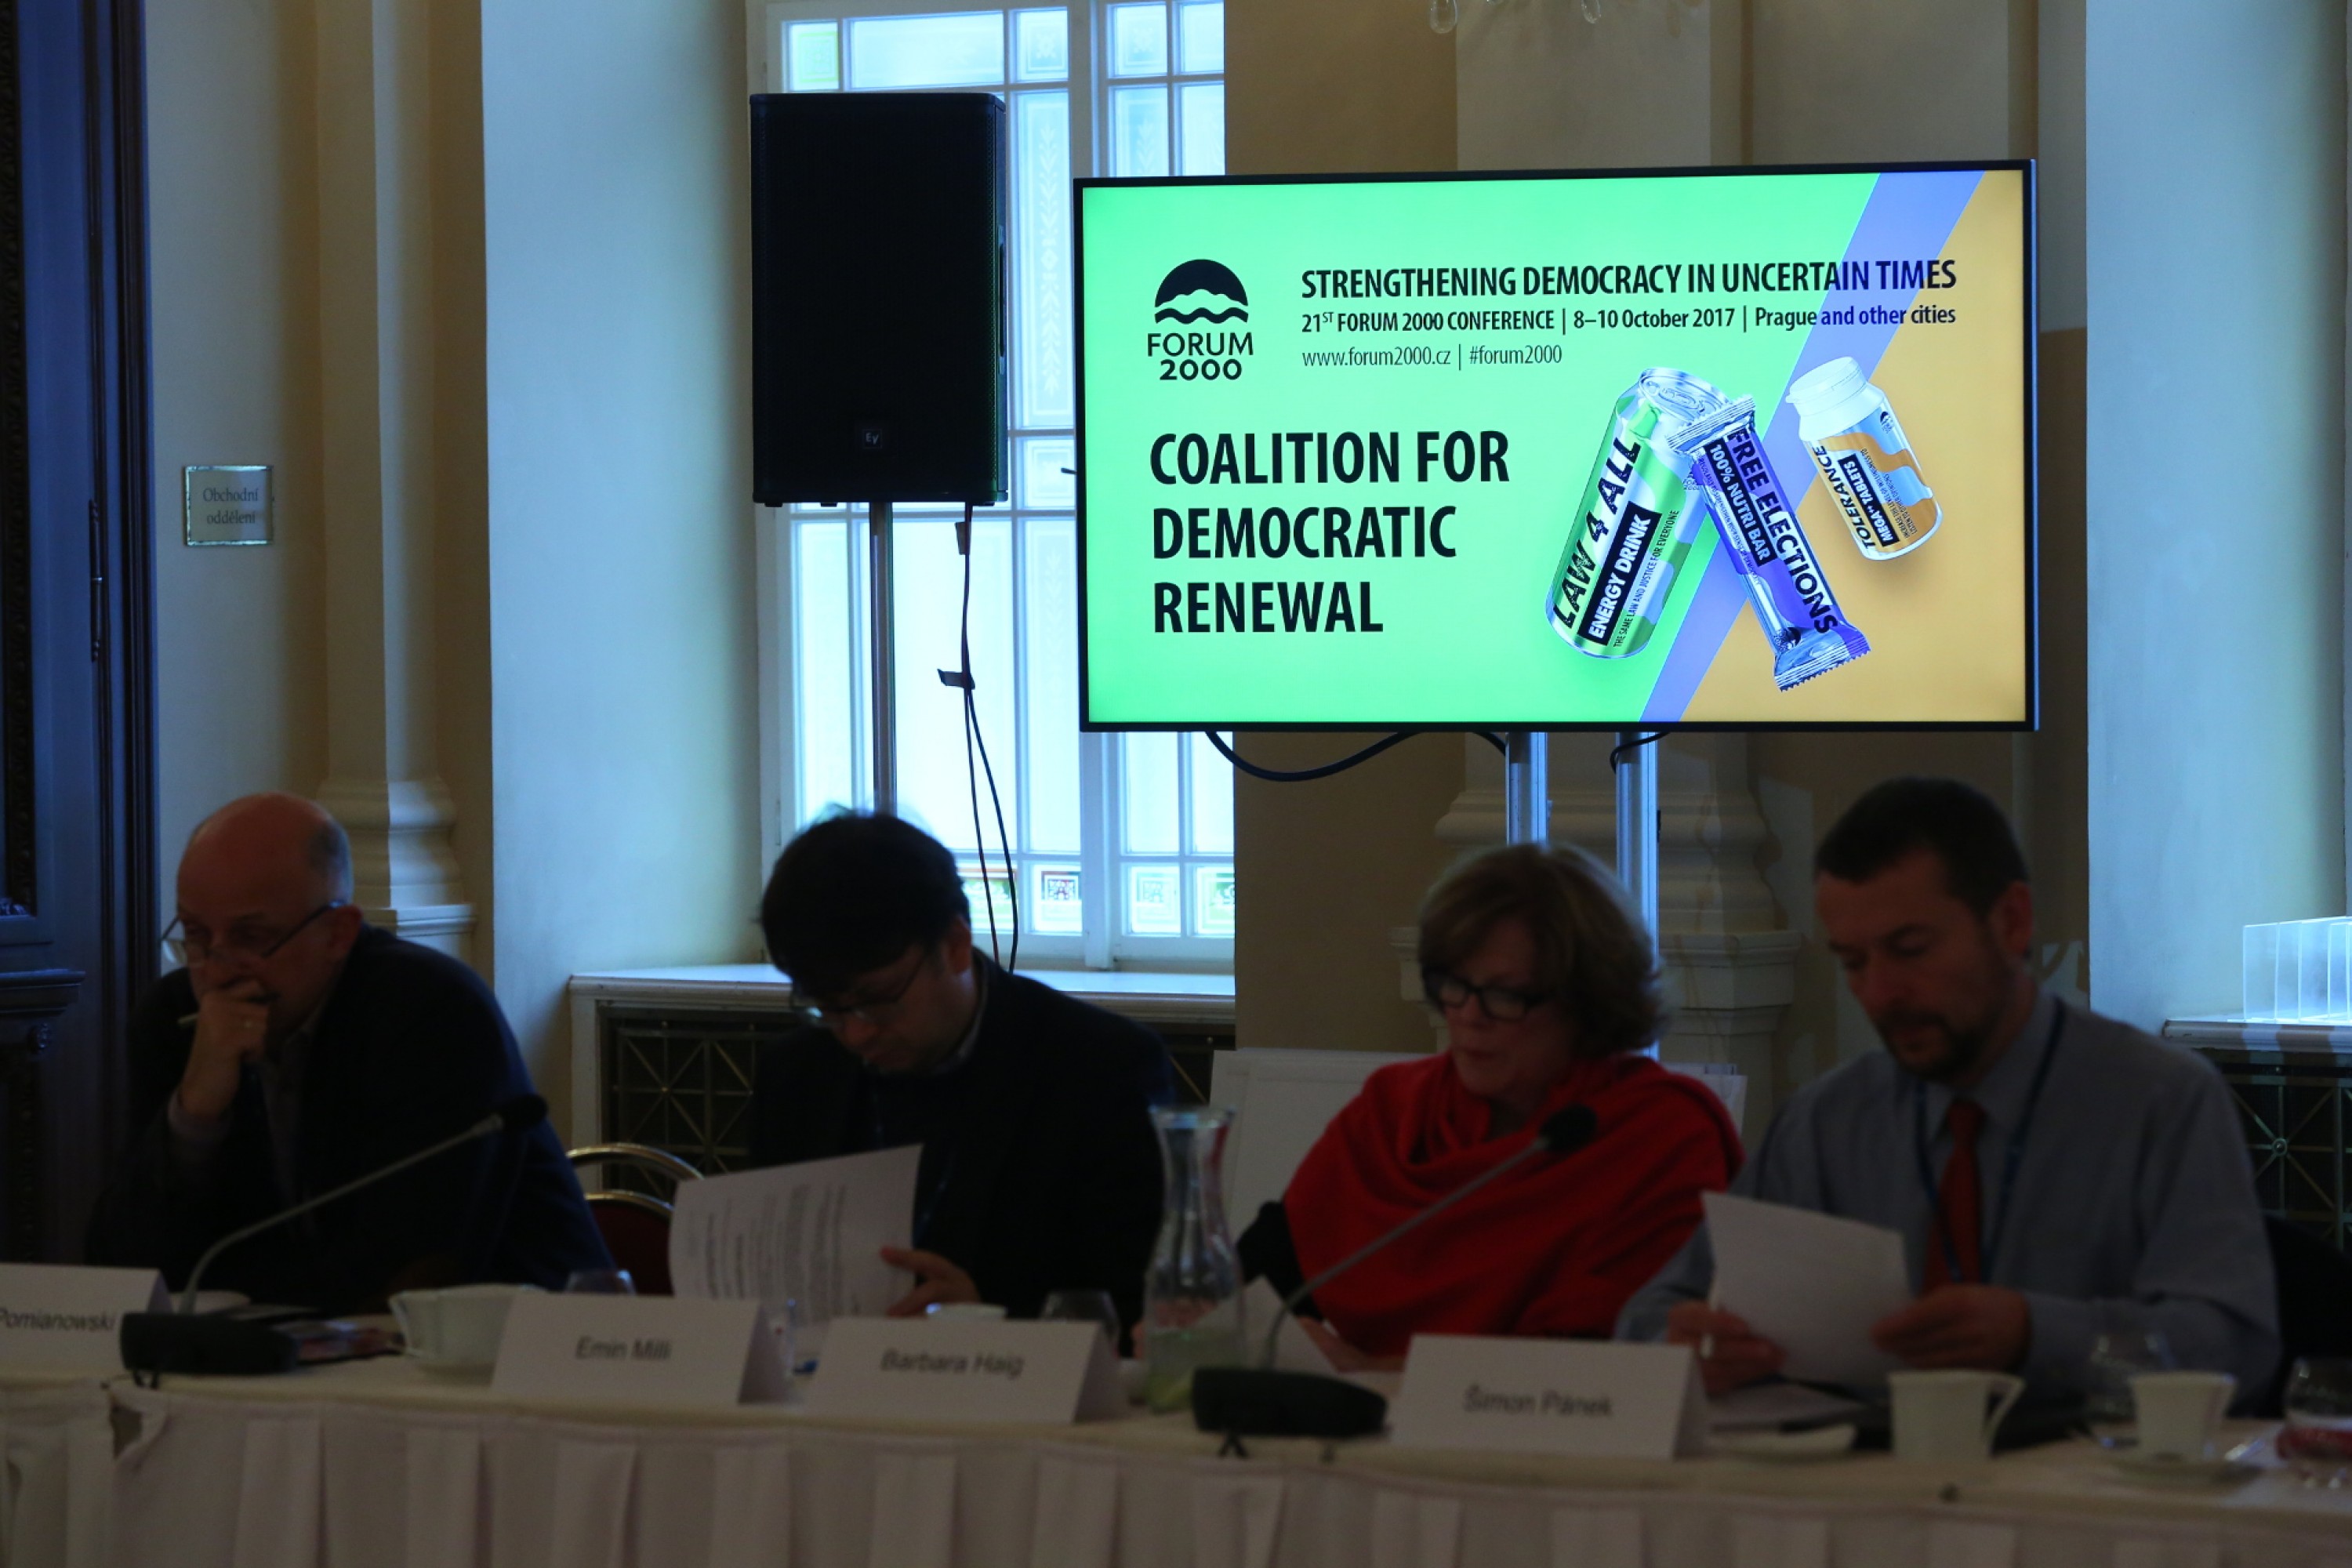 Презентация Коалиции за демократическое обновление во время Форума 2000. Фото: forum2000.cz